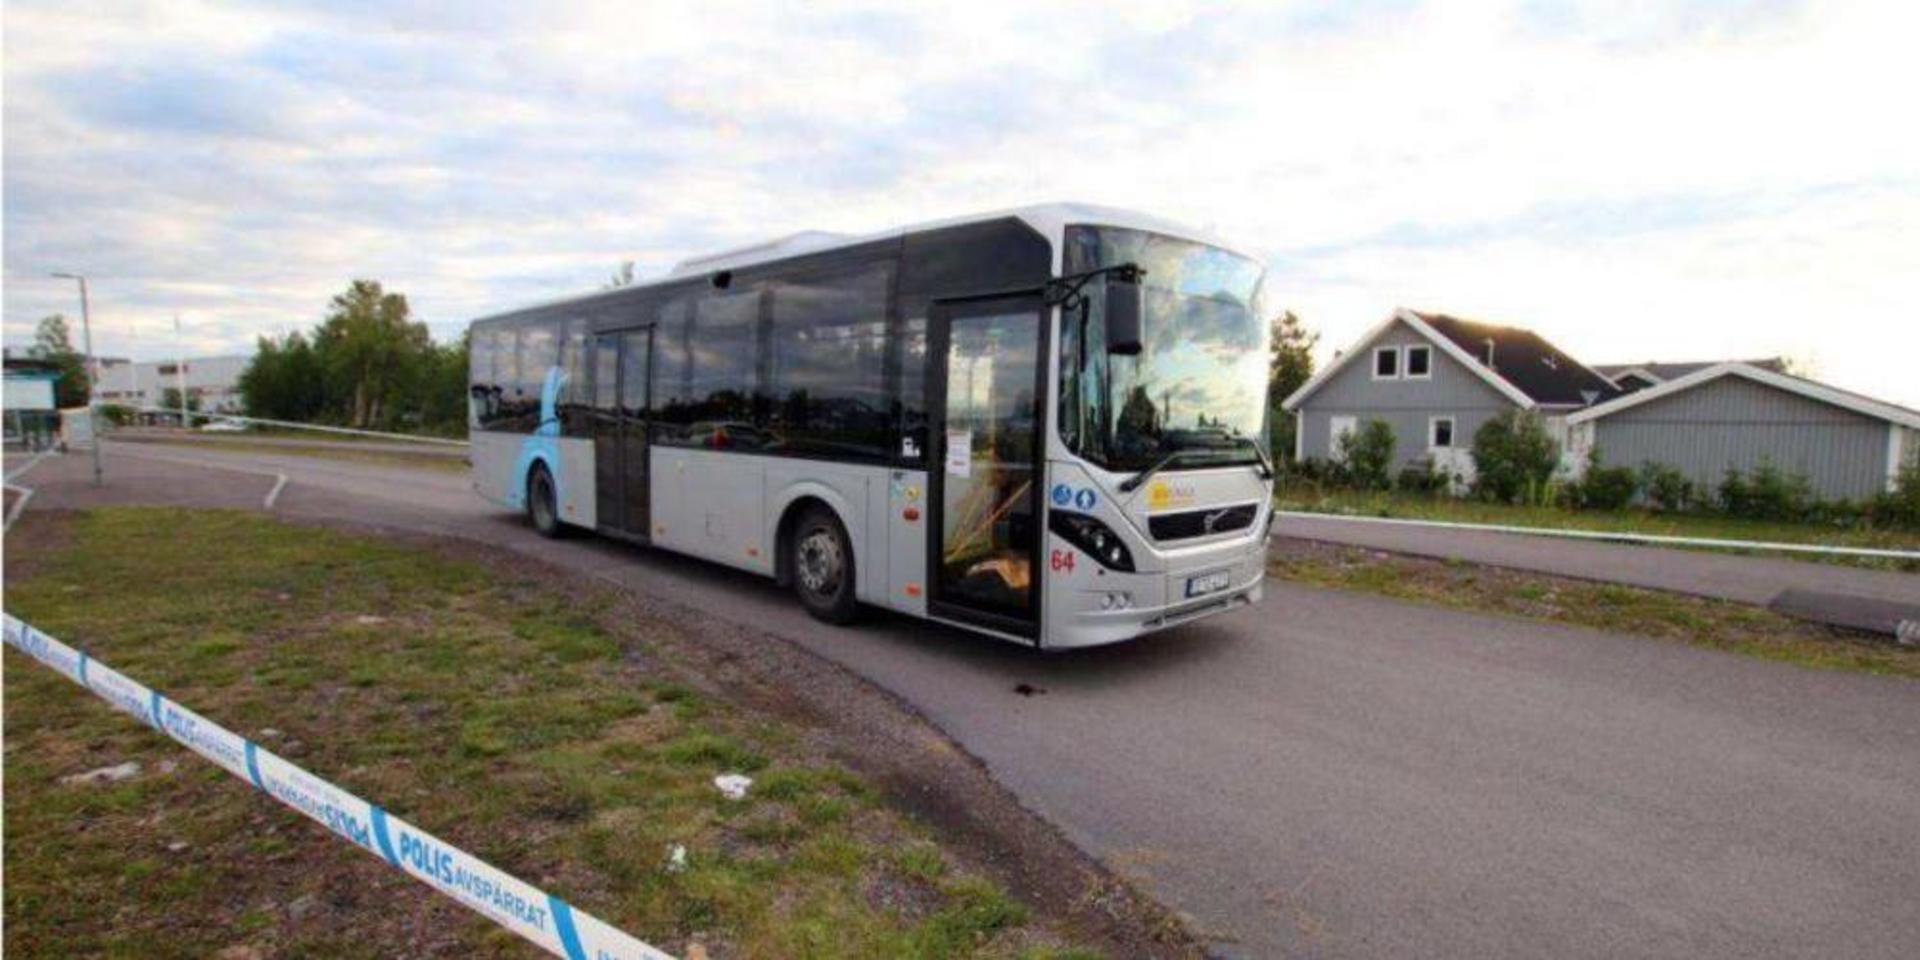 Den 20-årige mannen höggs ihjäl på en buss i centrala Kiruna den 15 juli i år.